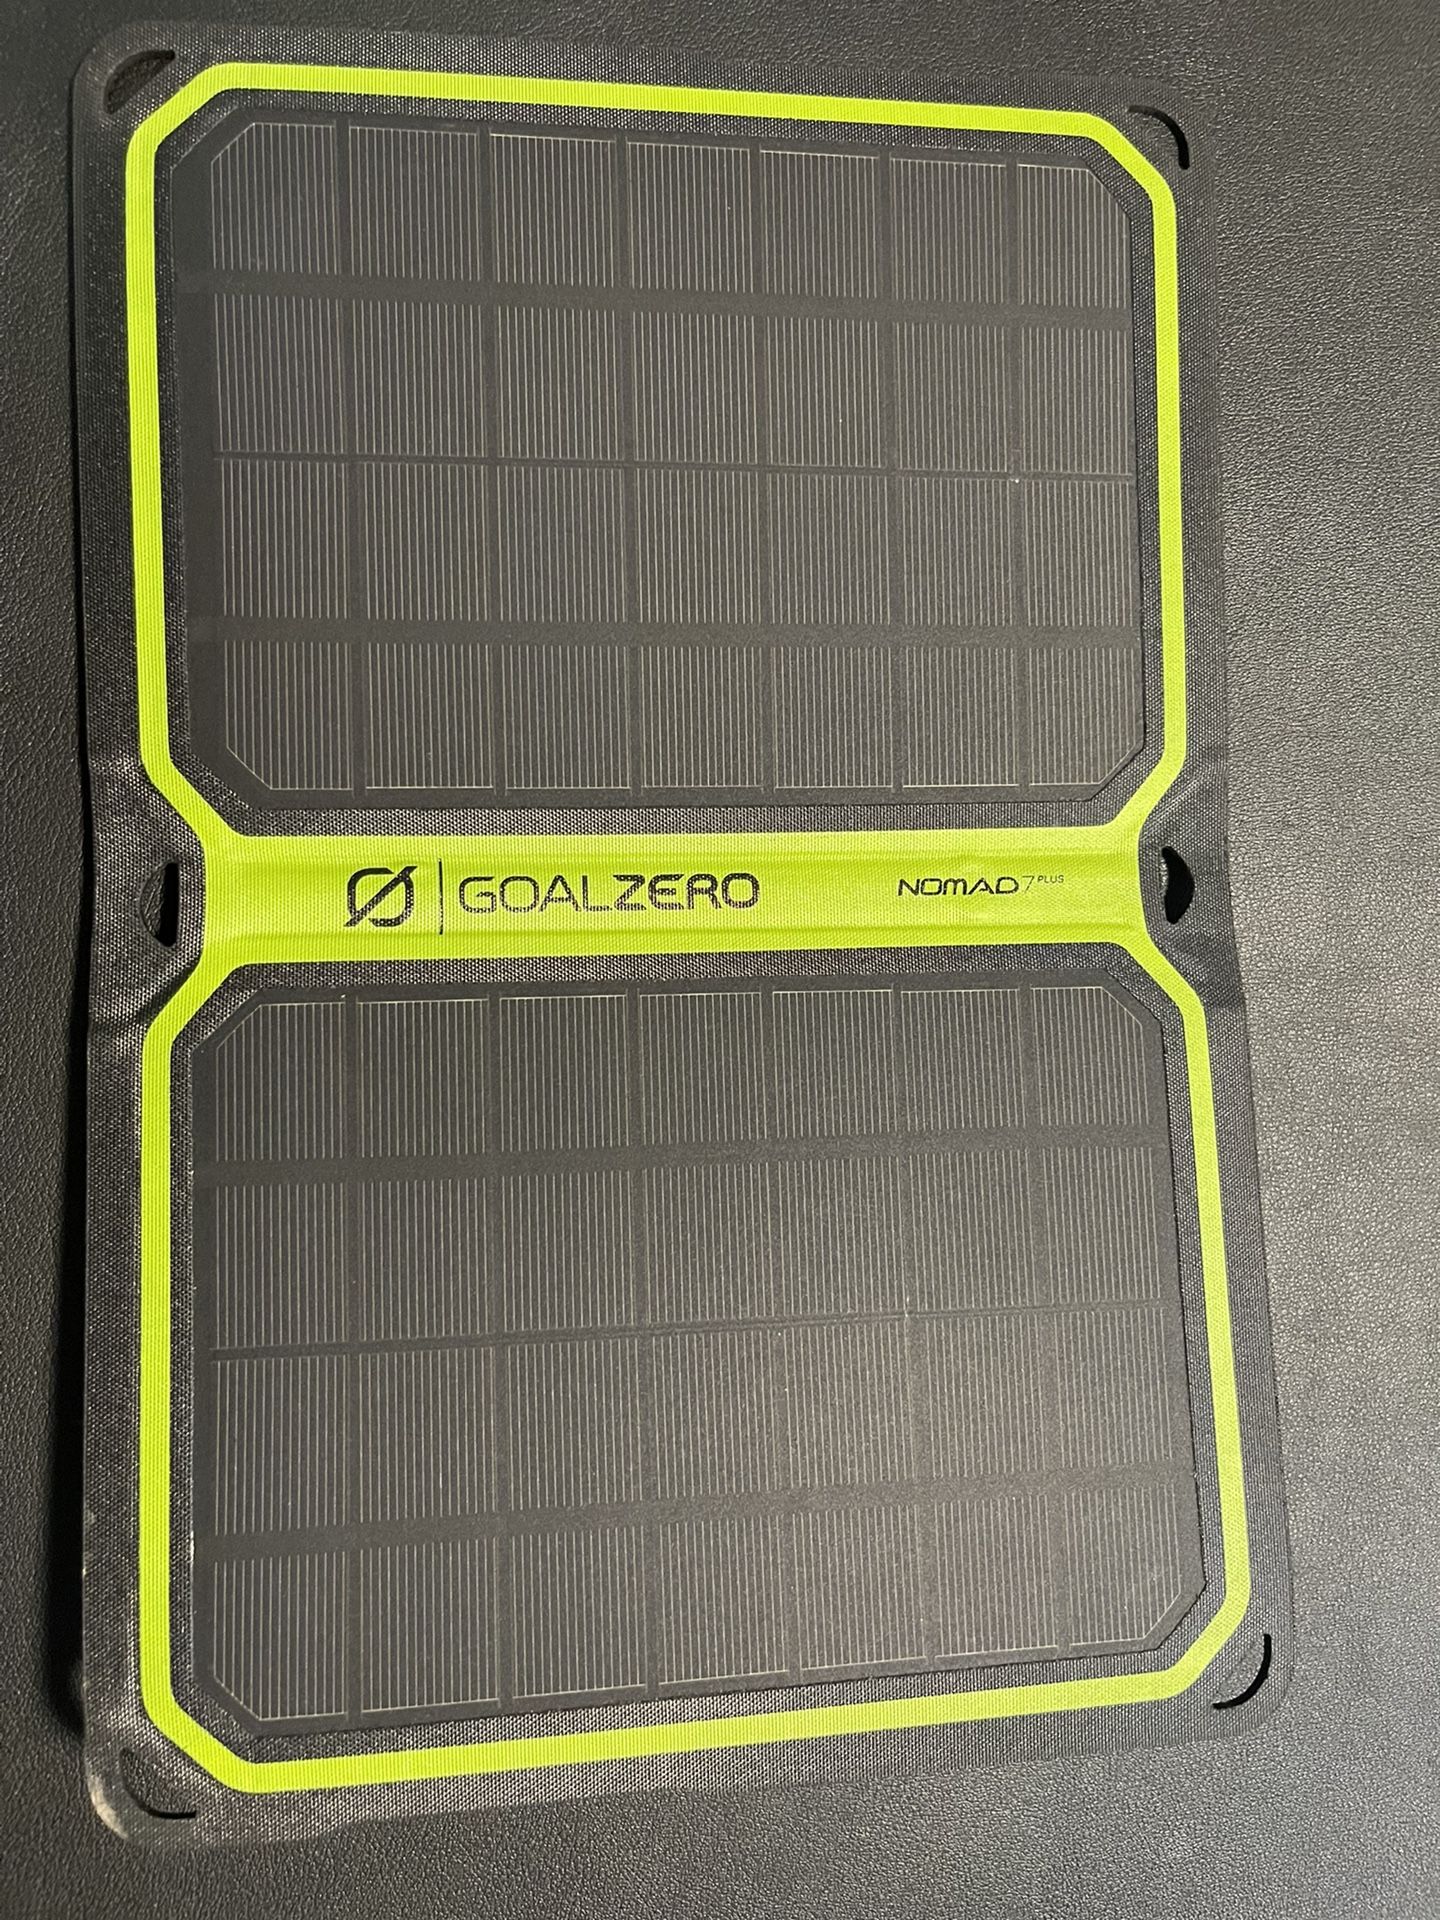 Goalzero Nomad 7 Plus Solar Panel 